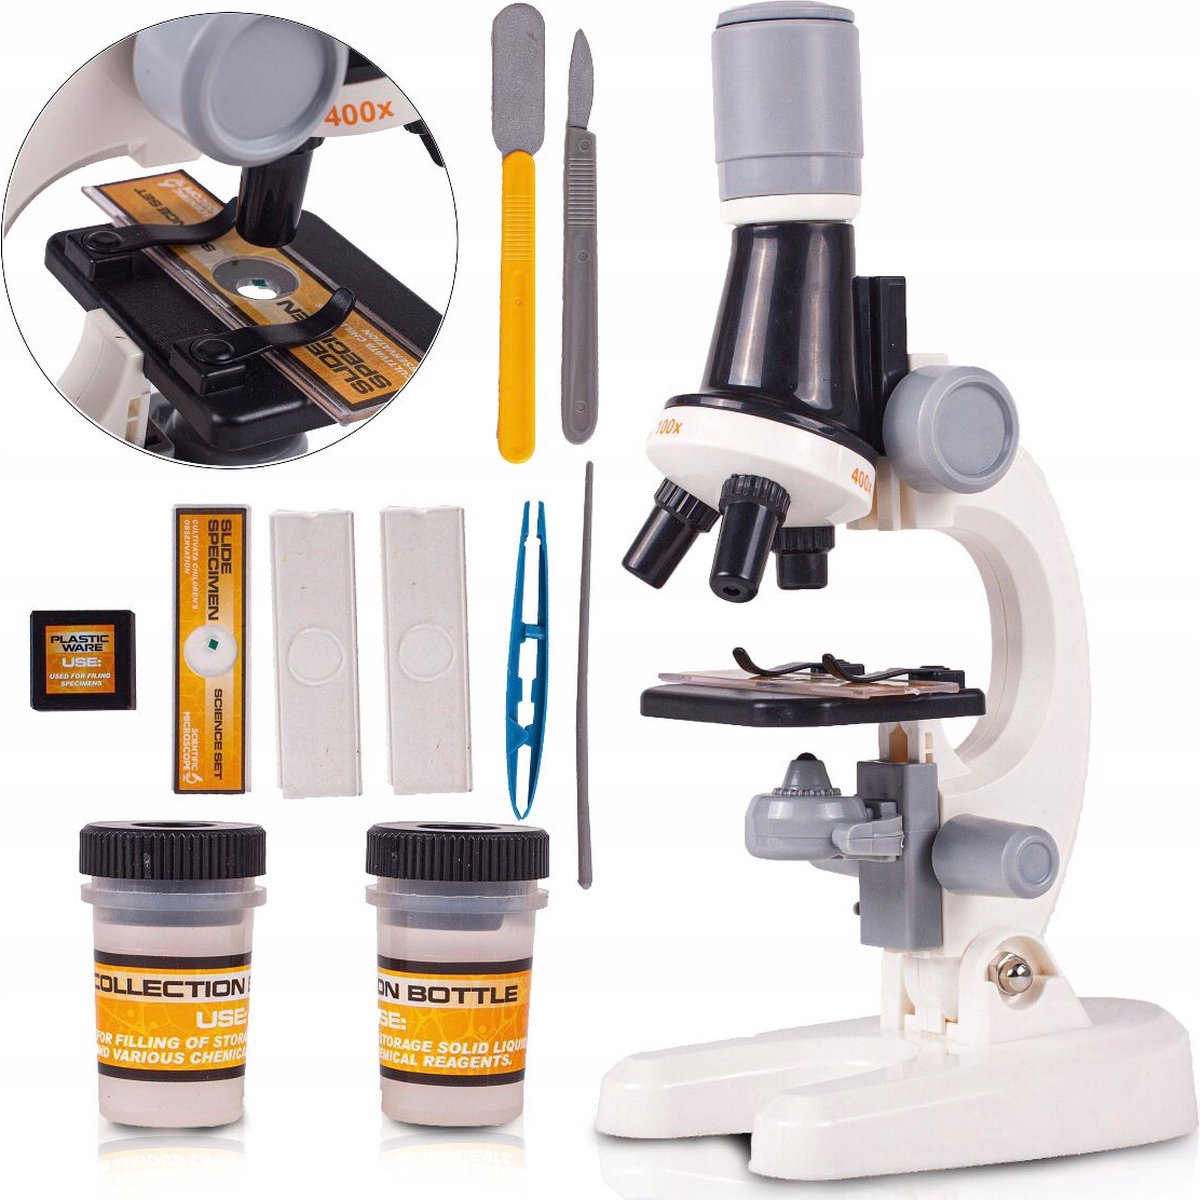 Kinder Microscoop - Junior - Educatief - Wetenschap - Techniek - Biologie - Microscoop met LED Verlichting - Speelgoed - Wit